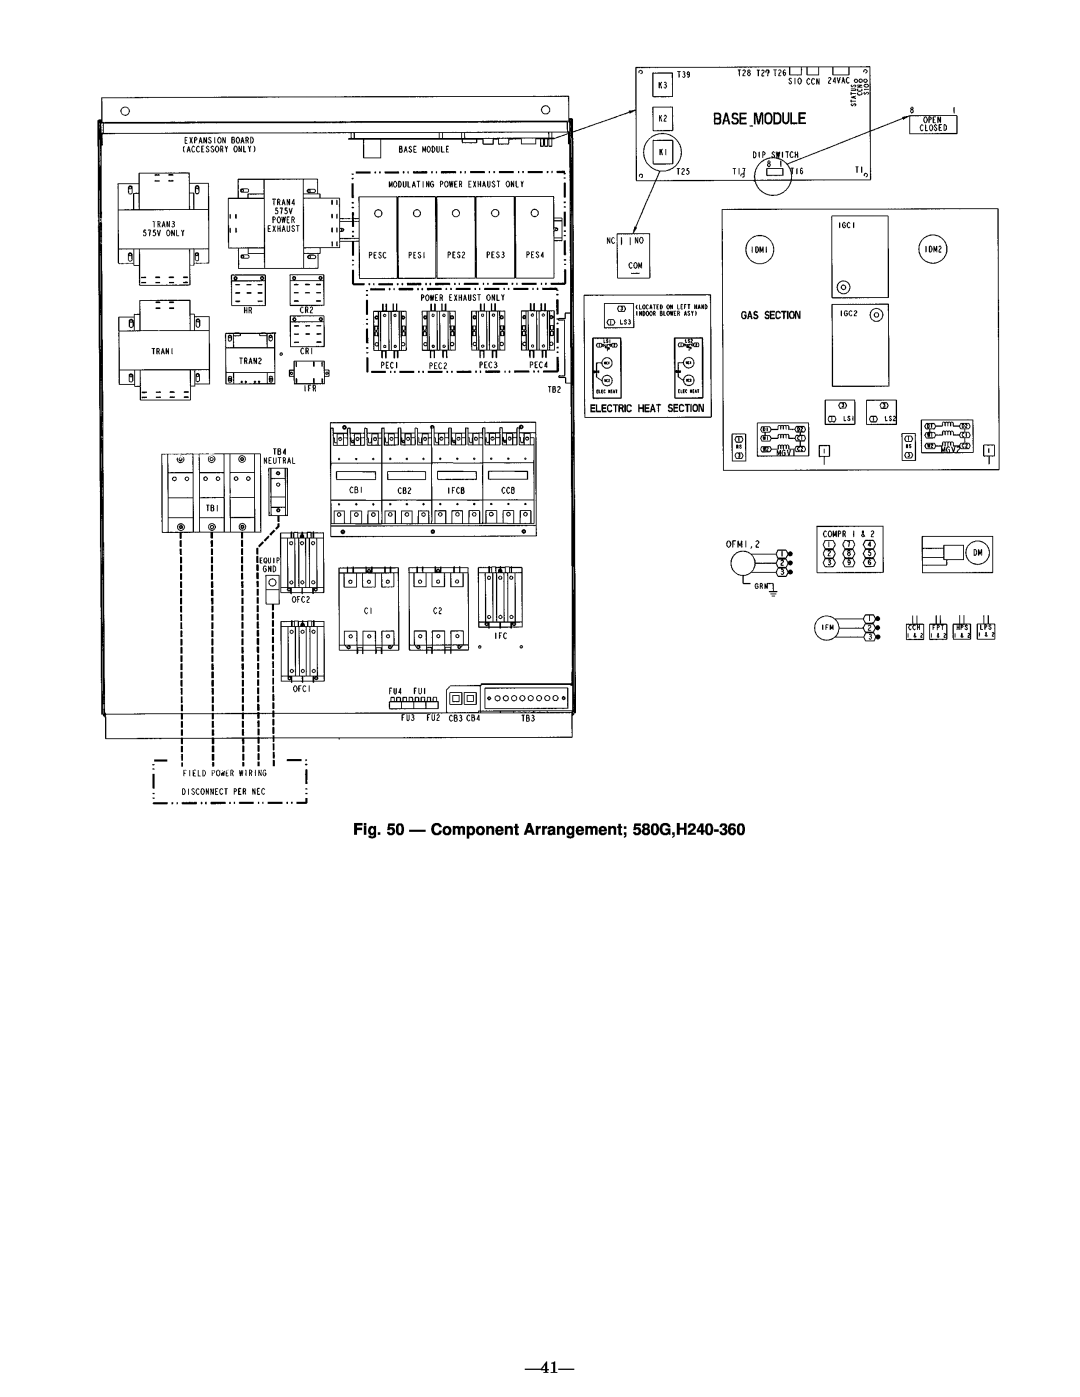 Bryant manual Ð Component Arrangement 580G,H240-360, Ð41Ð 